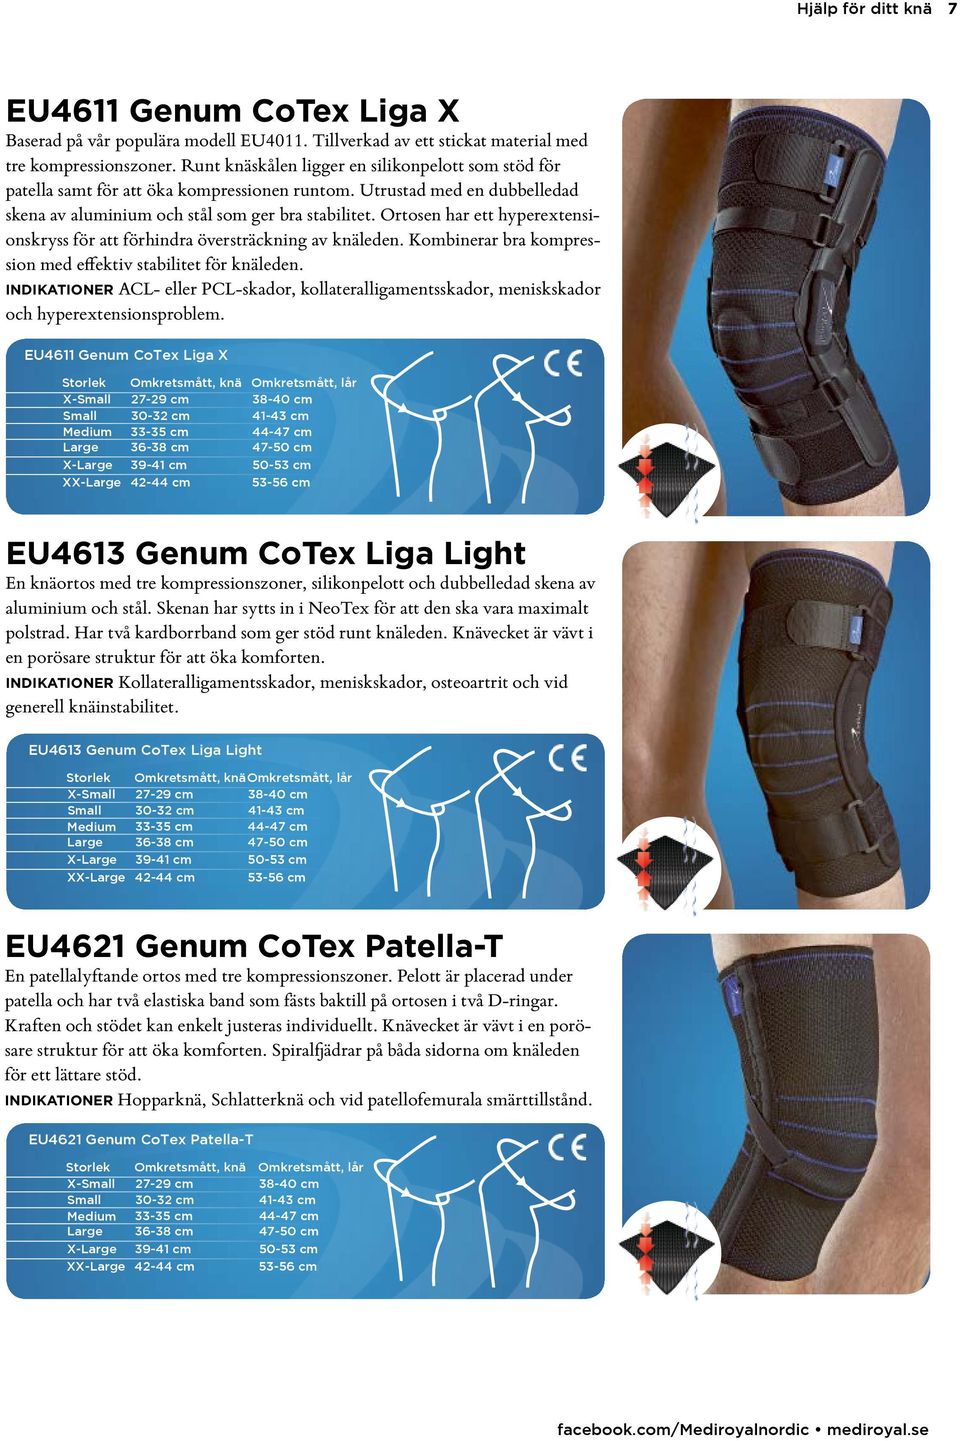 Ortosen har ett hyperextensionskryss för att förhindra översträckning av knäleden. Kombinerar bra kompression med effektiv stabilitet för knäleden.